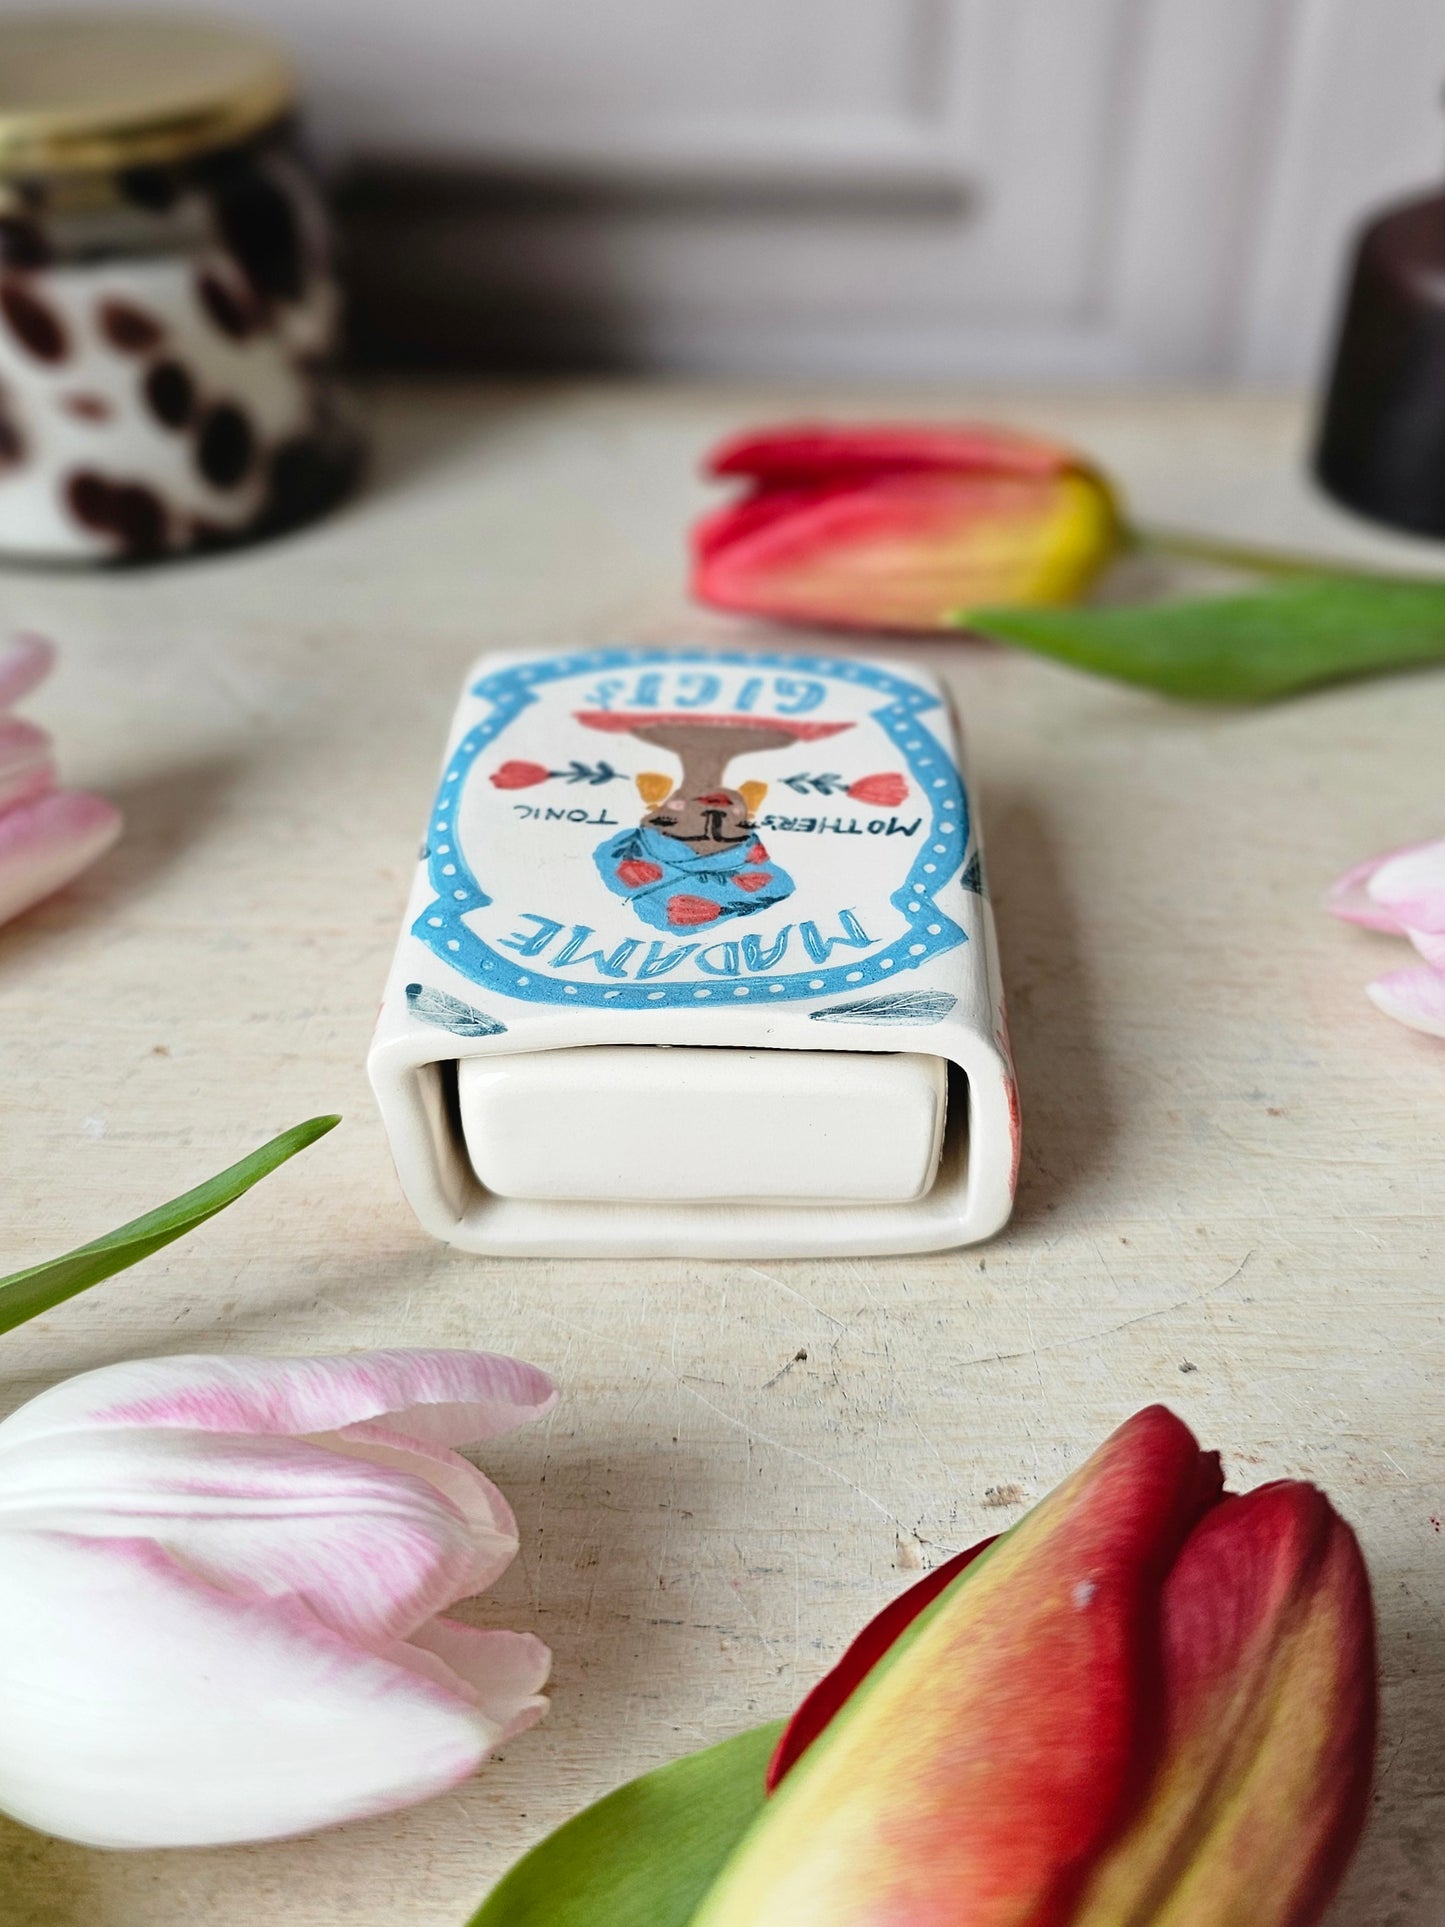 Madame Gigi's small ceramic matchbox